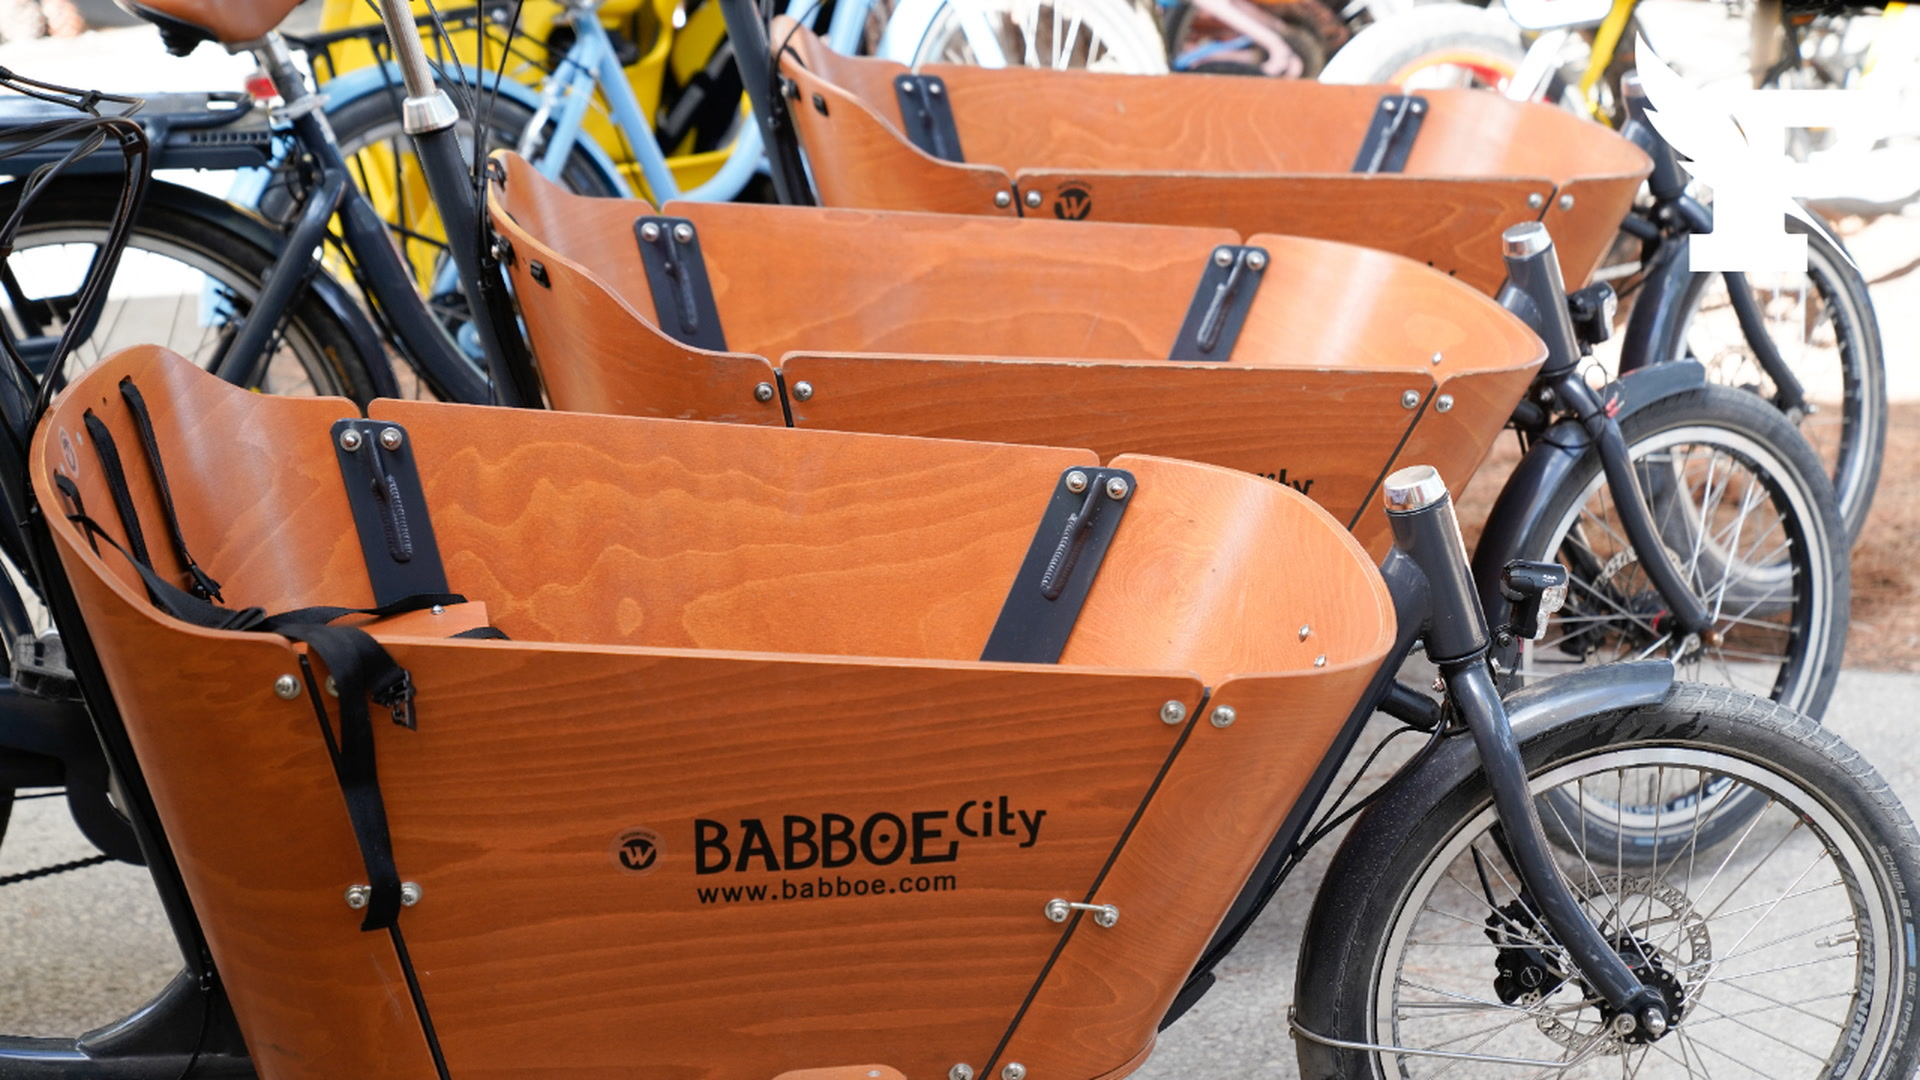 Jugés dangereux, les vélos-cargos Babboe retirés de la vente